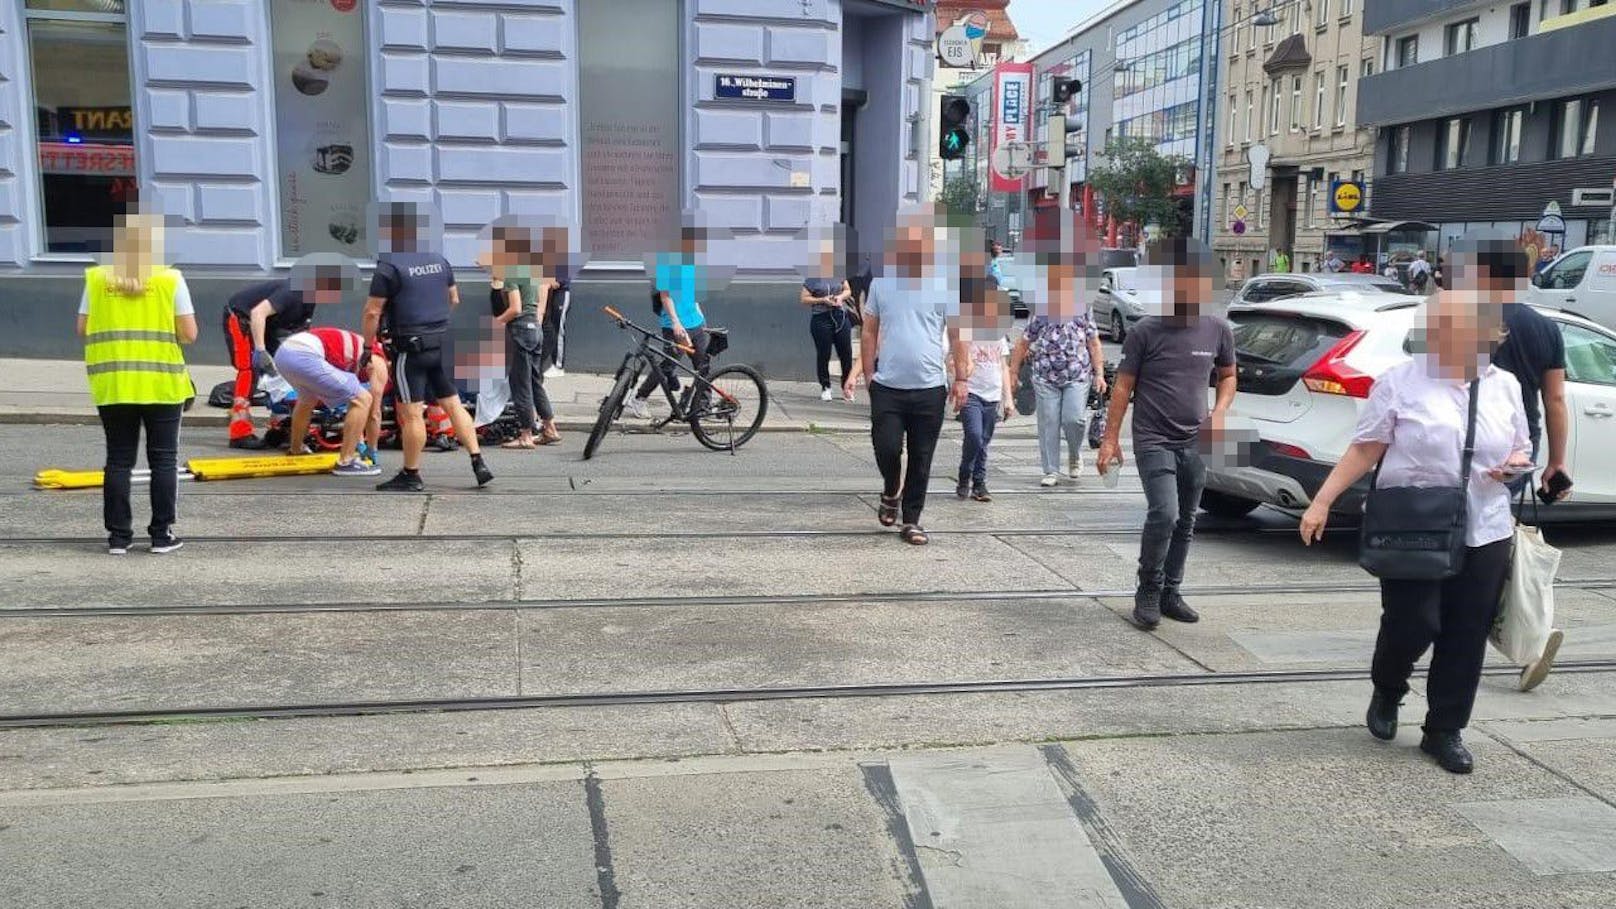 Wie die Wiener Berufsrettung gegenüber "Heute" bestätigt, erlitt der Motorradfahrer, ein 64-jähriger Mann, im Zuge des Unfalles ein Polytrauma sowie mehrere Frakturen.